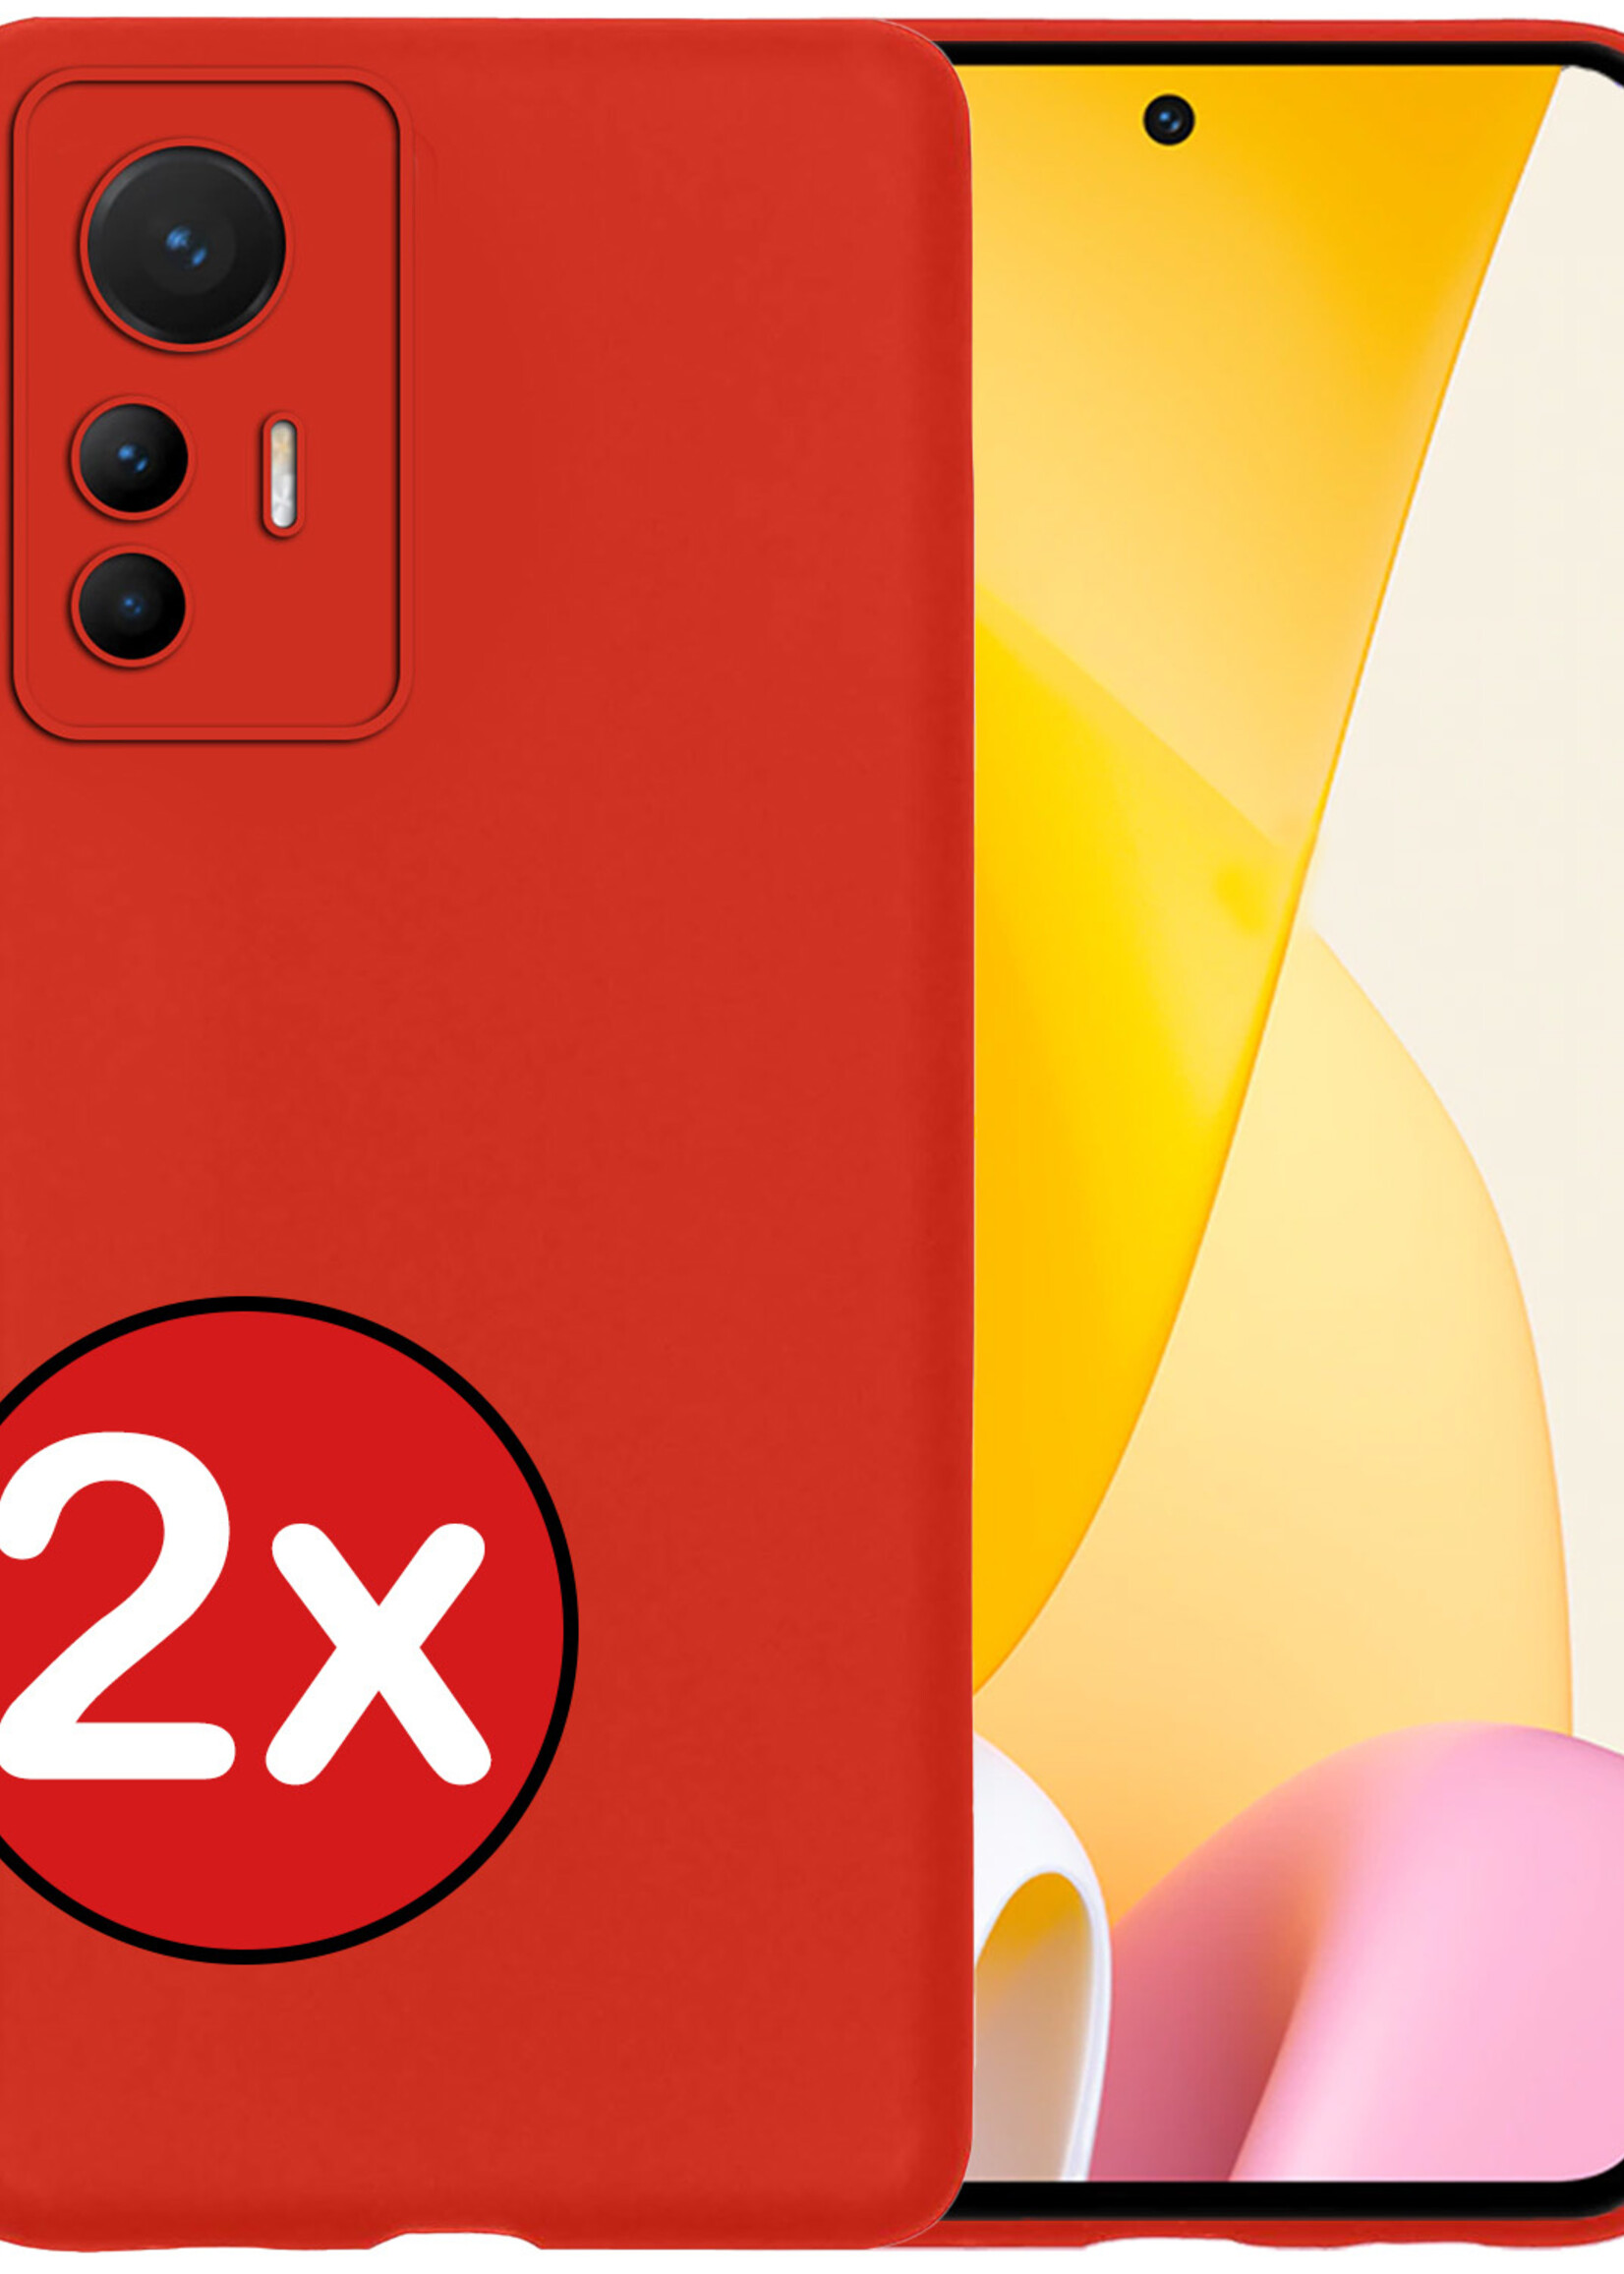 BTH Hoesje Geschikt voor Xiaomi 12 Lite Hoesje Siliconen Case Hoes - Hoes Geschikt voor Xiaomi 12 Lite Hoes Cover Case - Rood - 2 PACK